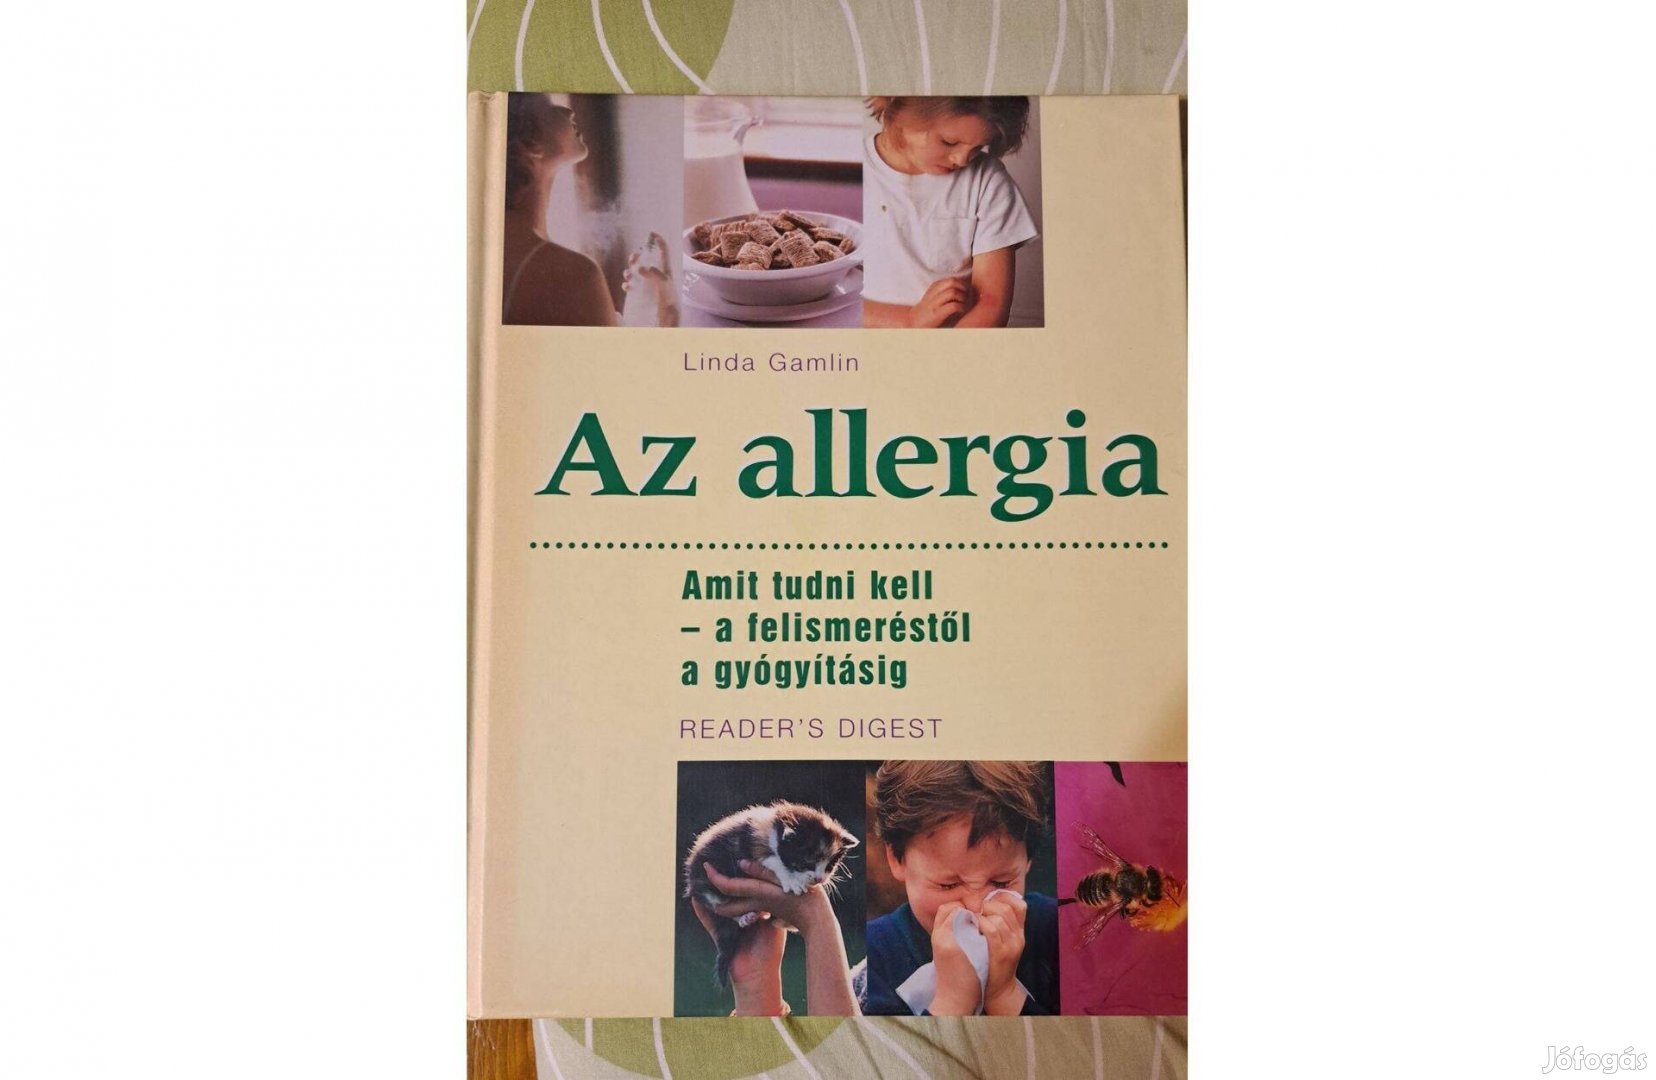 Az allergia című új könyv eladó